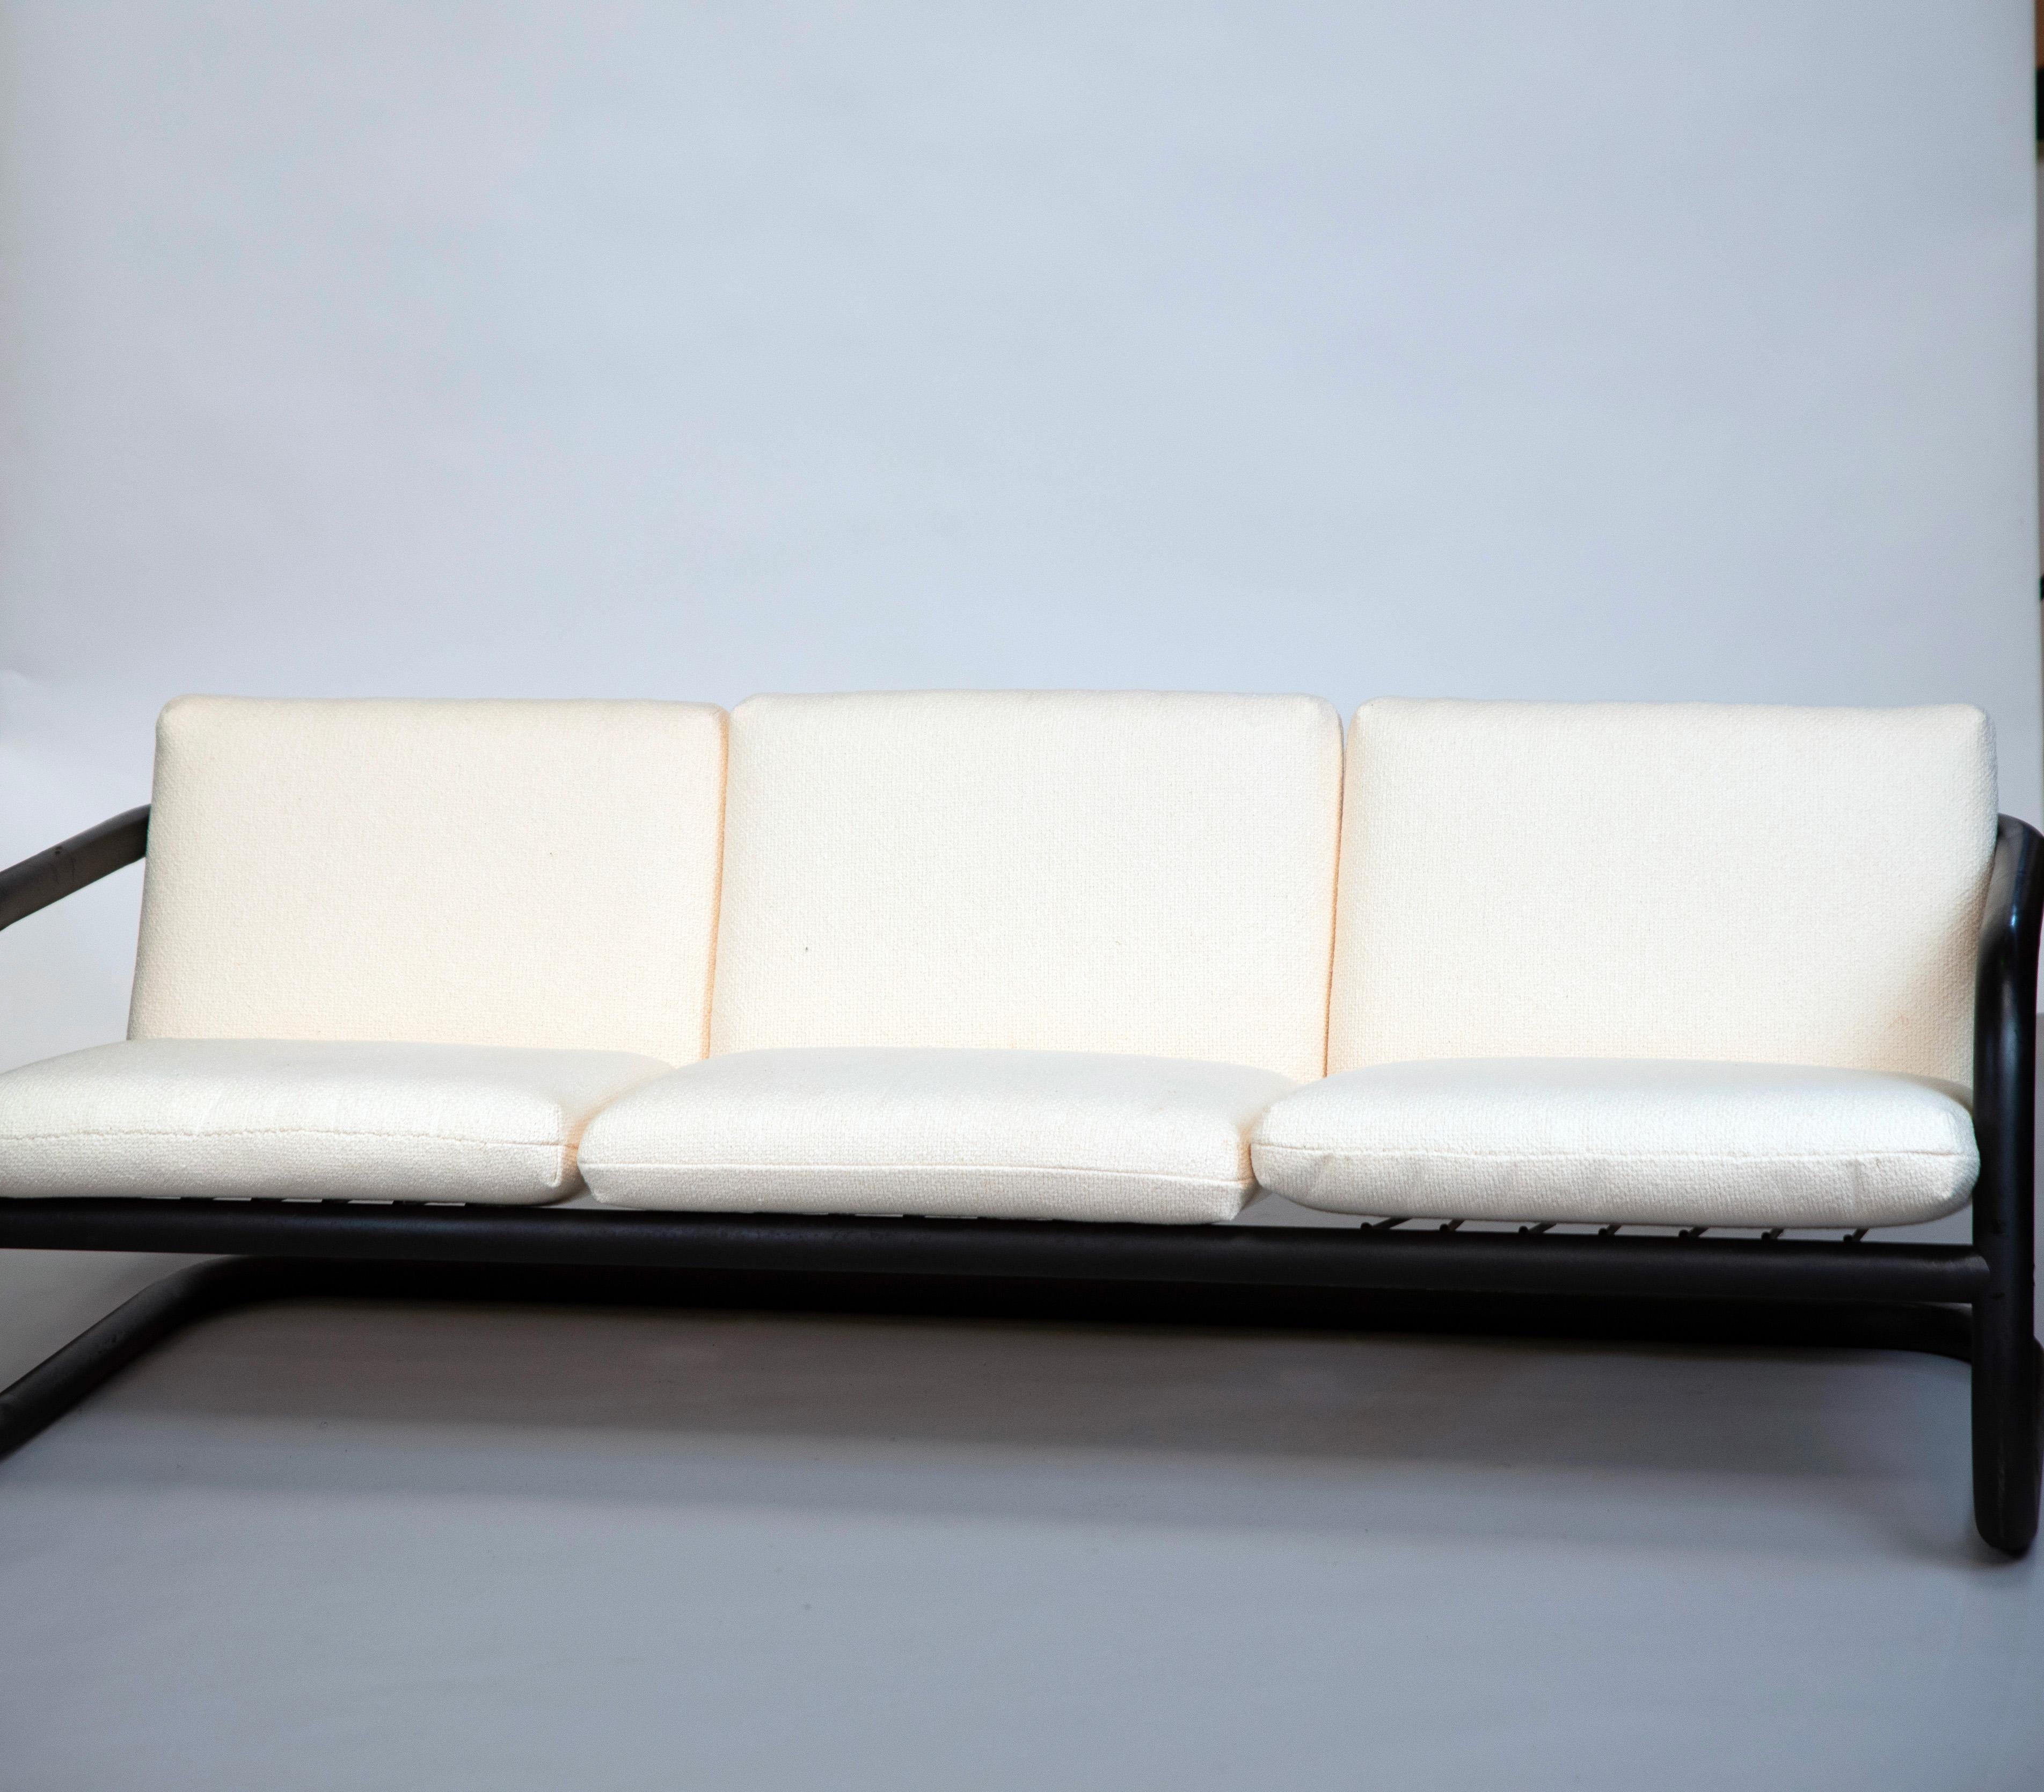 Conçu dans les années 1970, ce canapé à trois places en métal tubulaire et tissu blanc de Geraldo de Barros est à placer dans la continuité artistique de son créateur, qui fut un artiste important (designer, graveur, peintre, photographe, graphiste